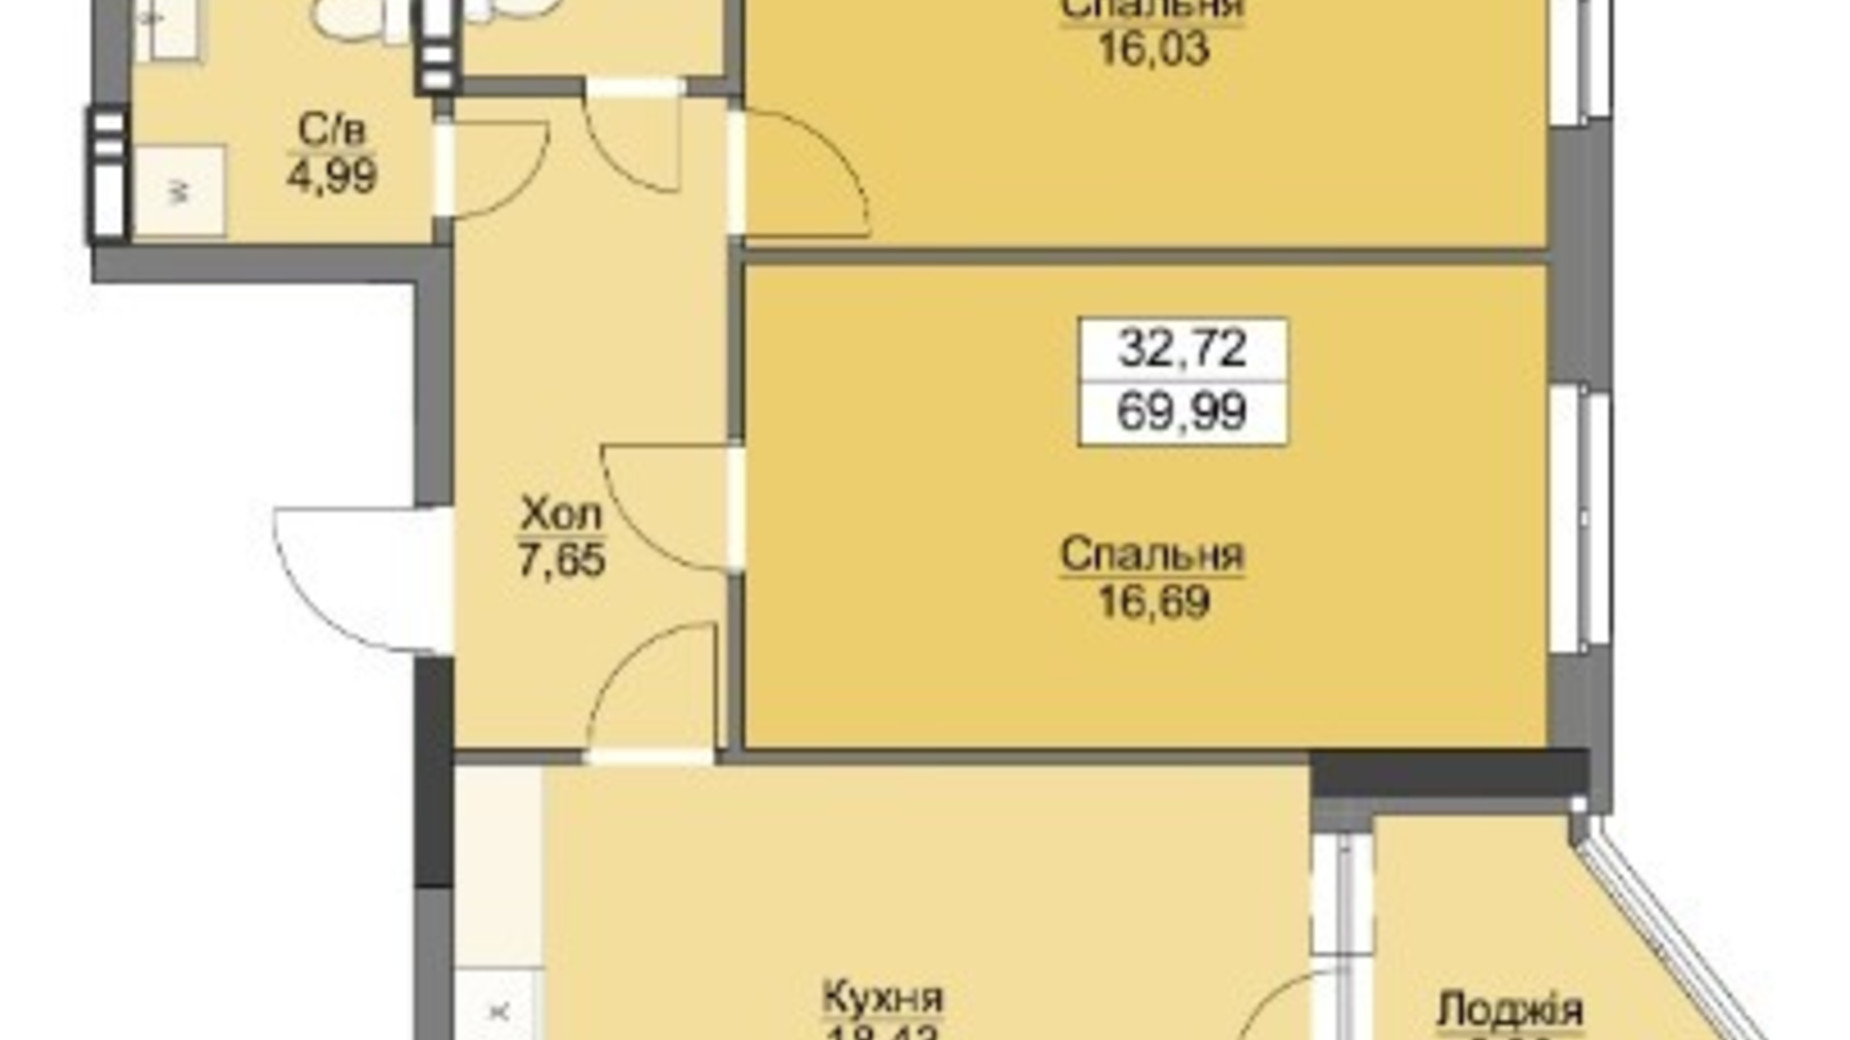 Планування 2-кімнатної квартири в ЖК Vyshgorod Plaza 69.99 м², фото 223710